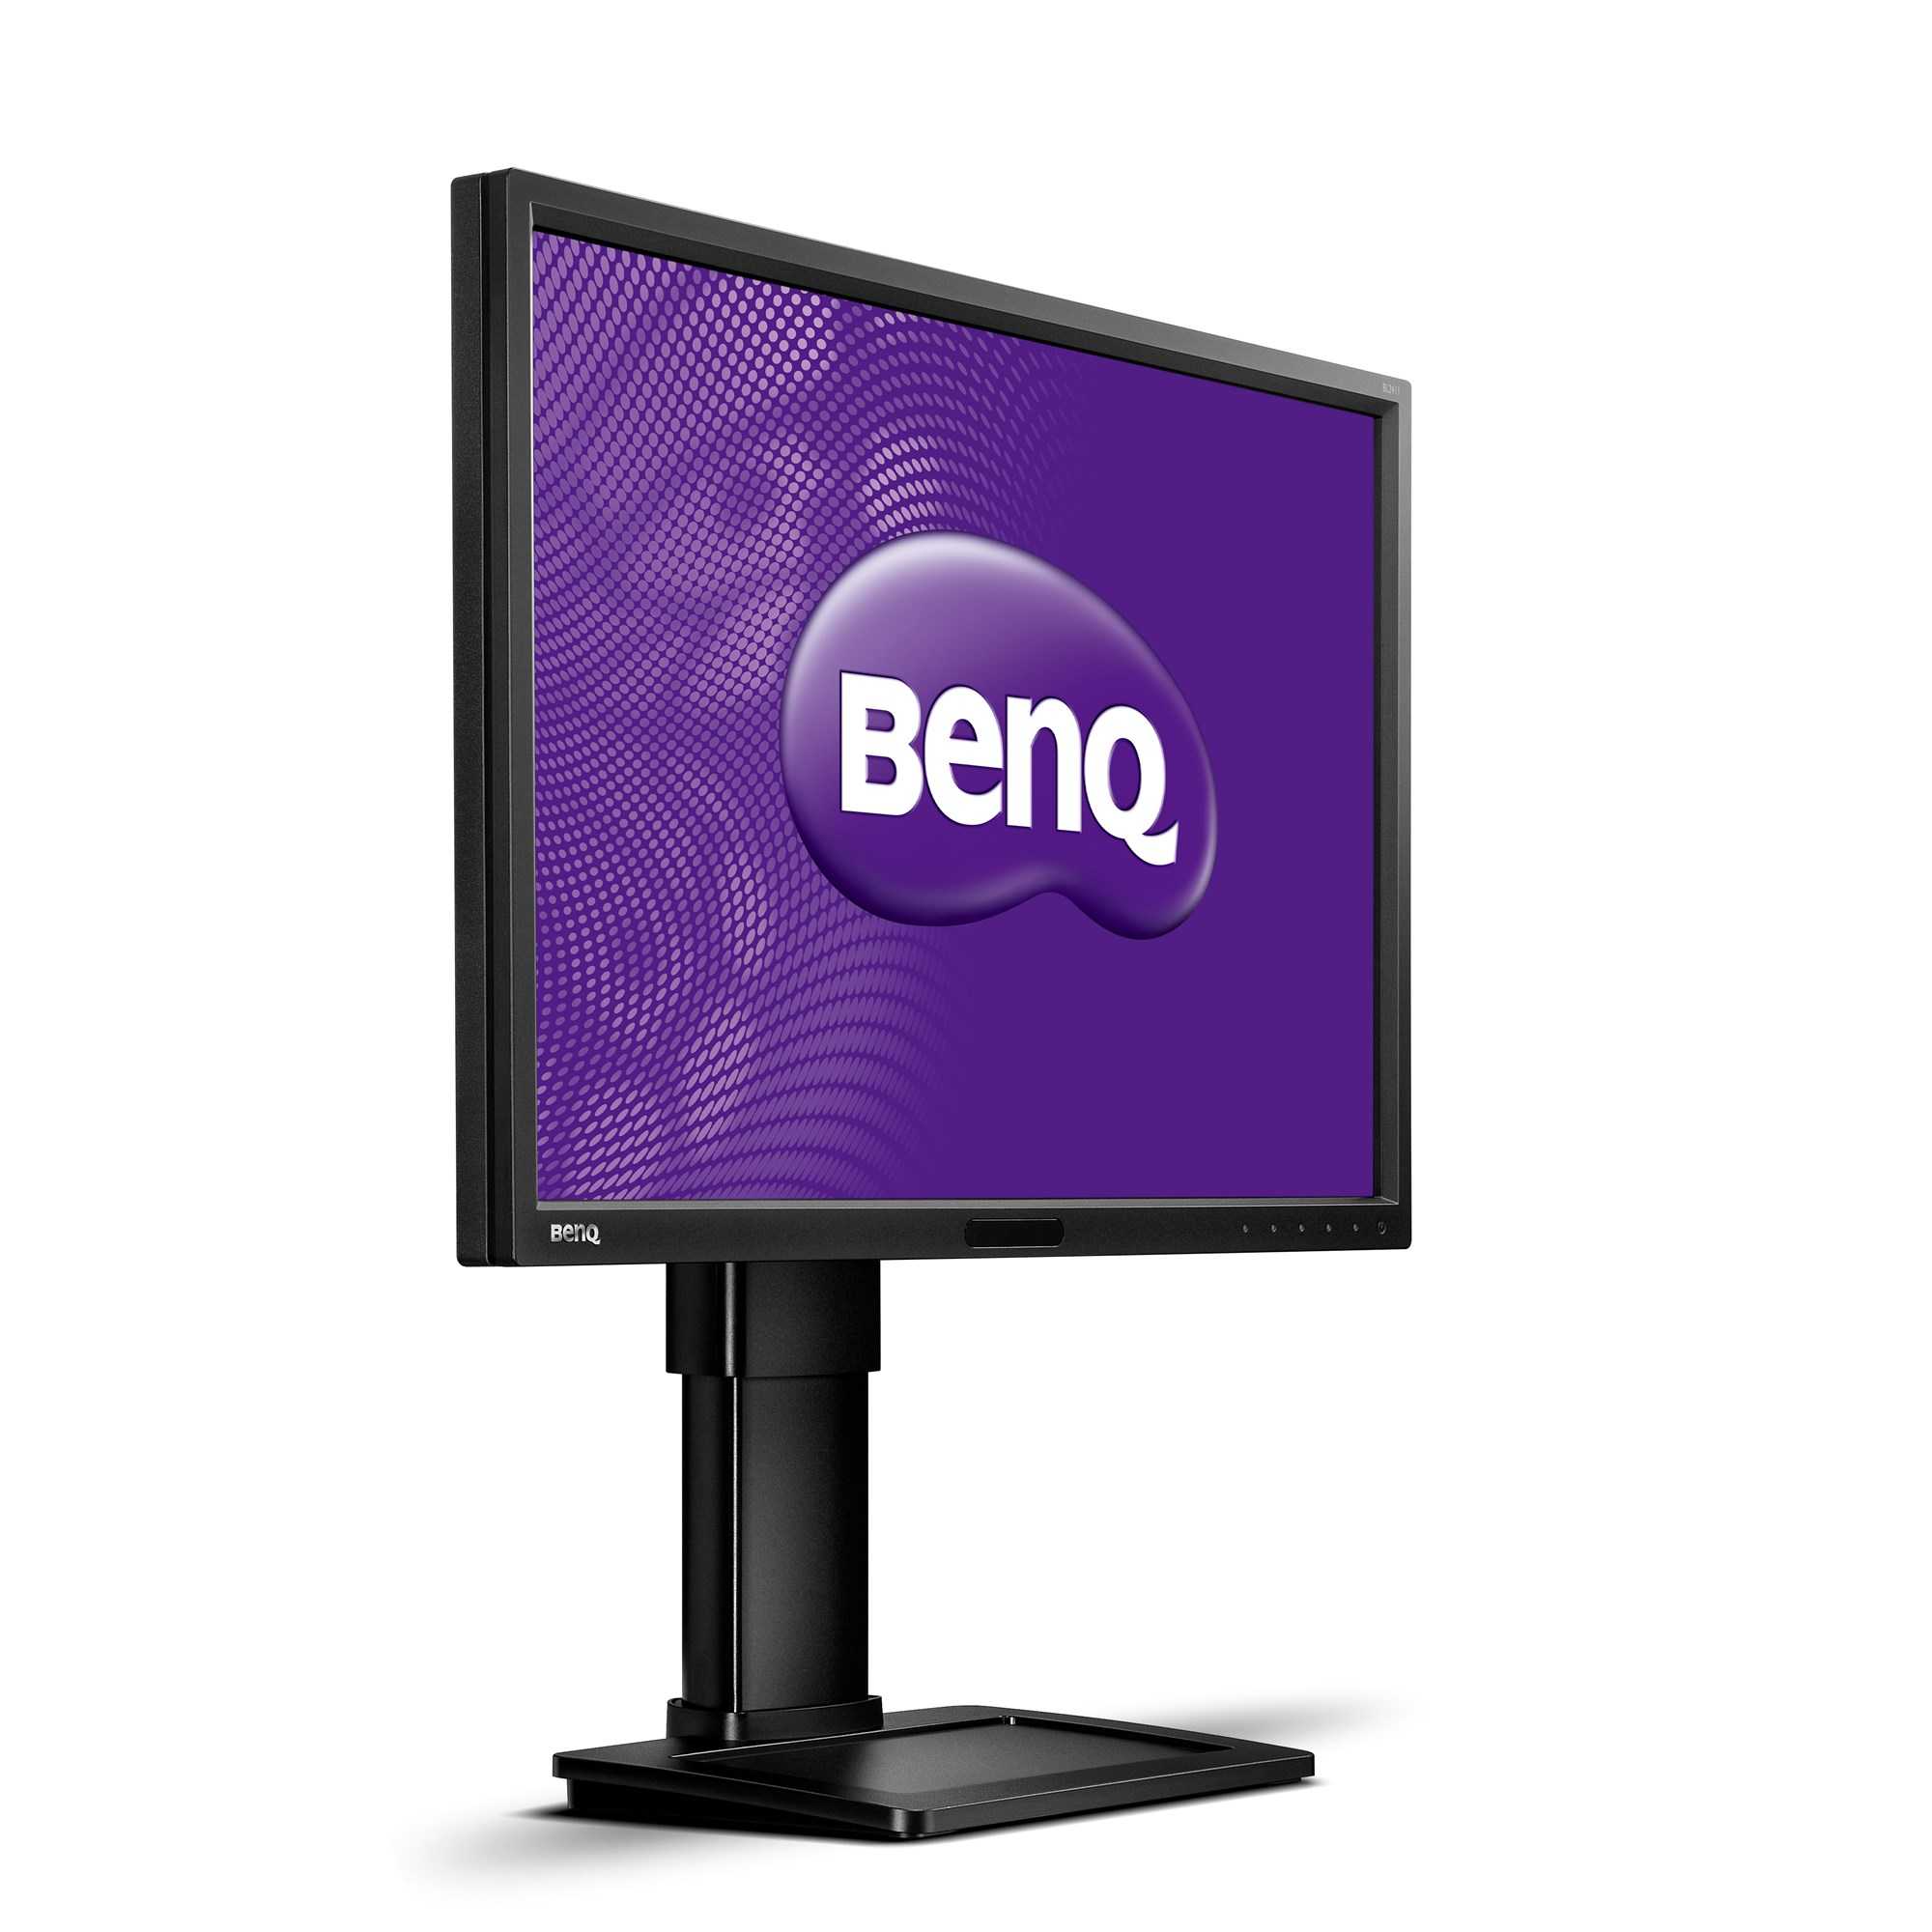 Benq bl2211m купить по акционной цене , отзывы и обзоры.